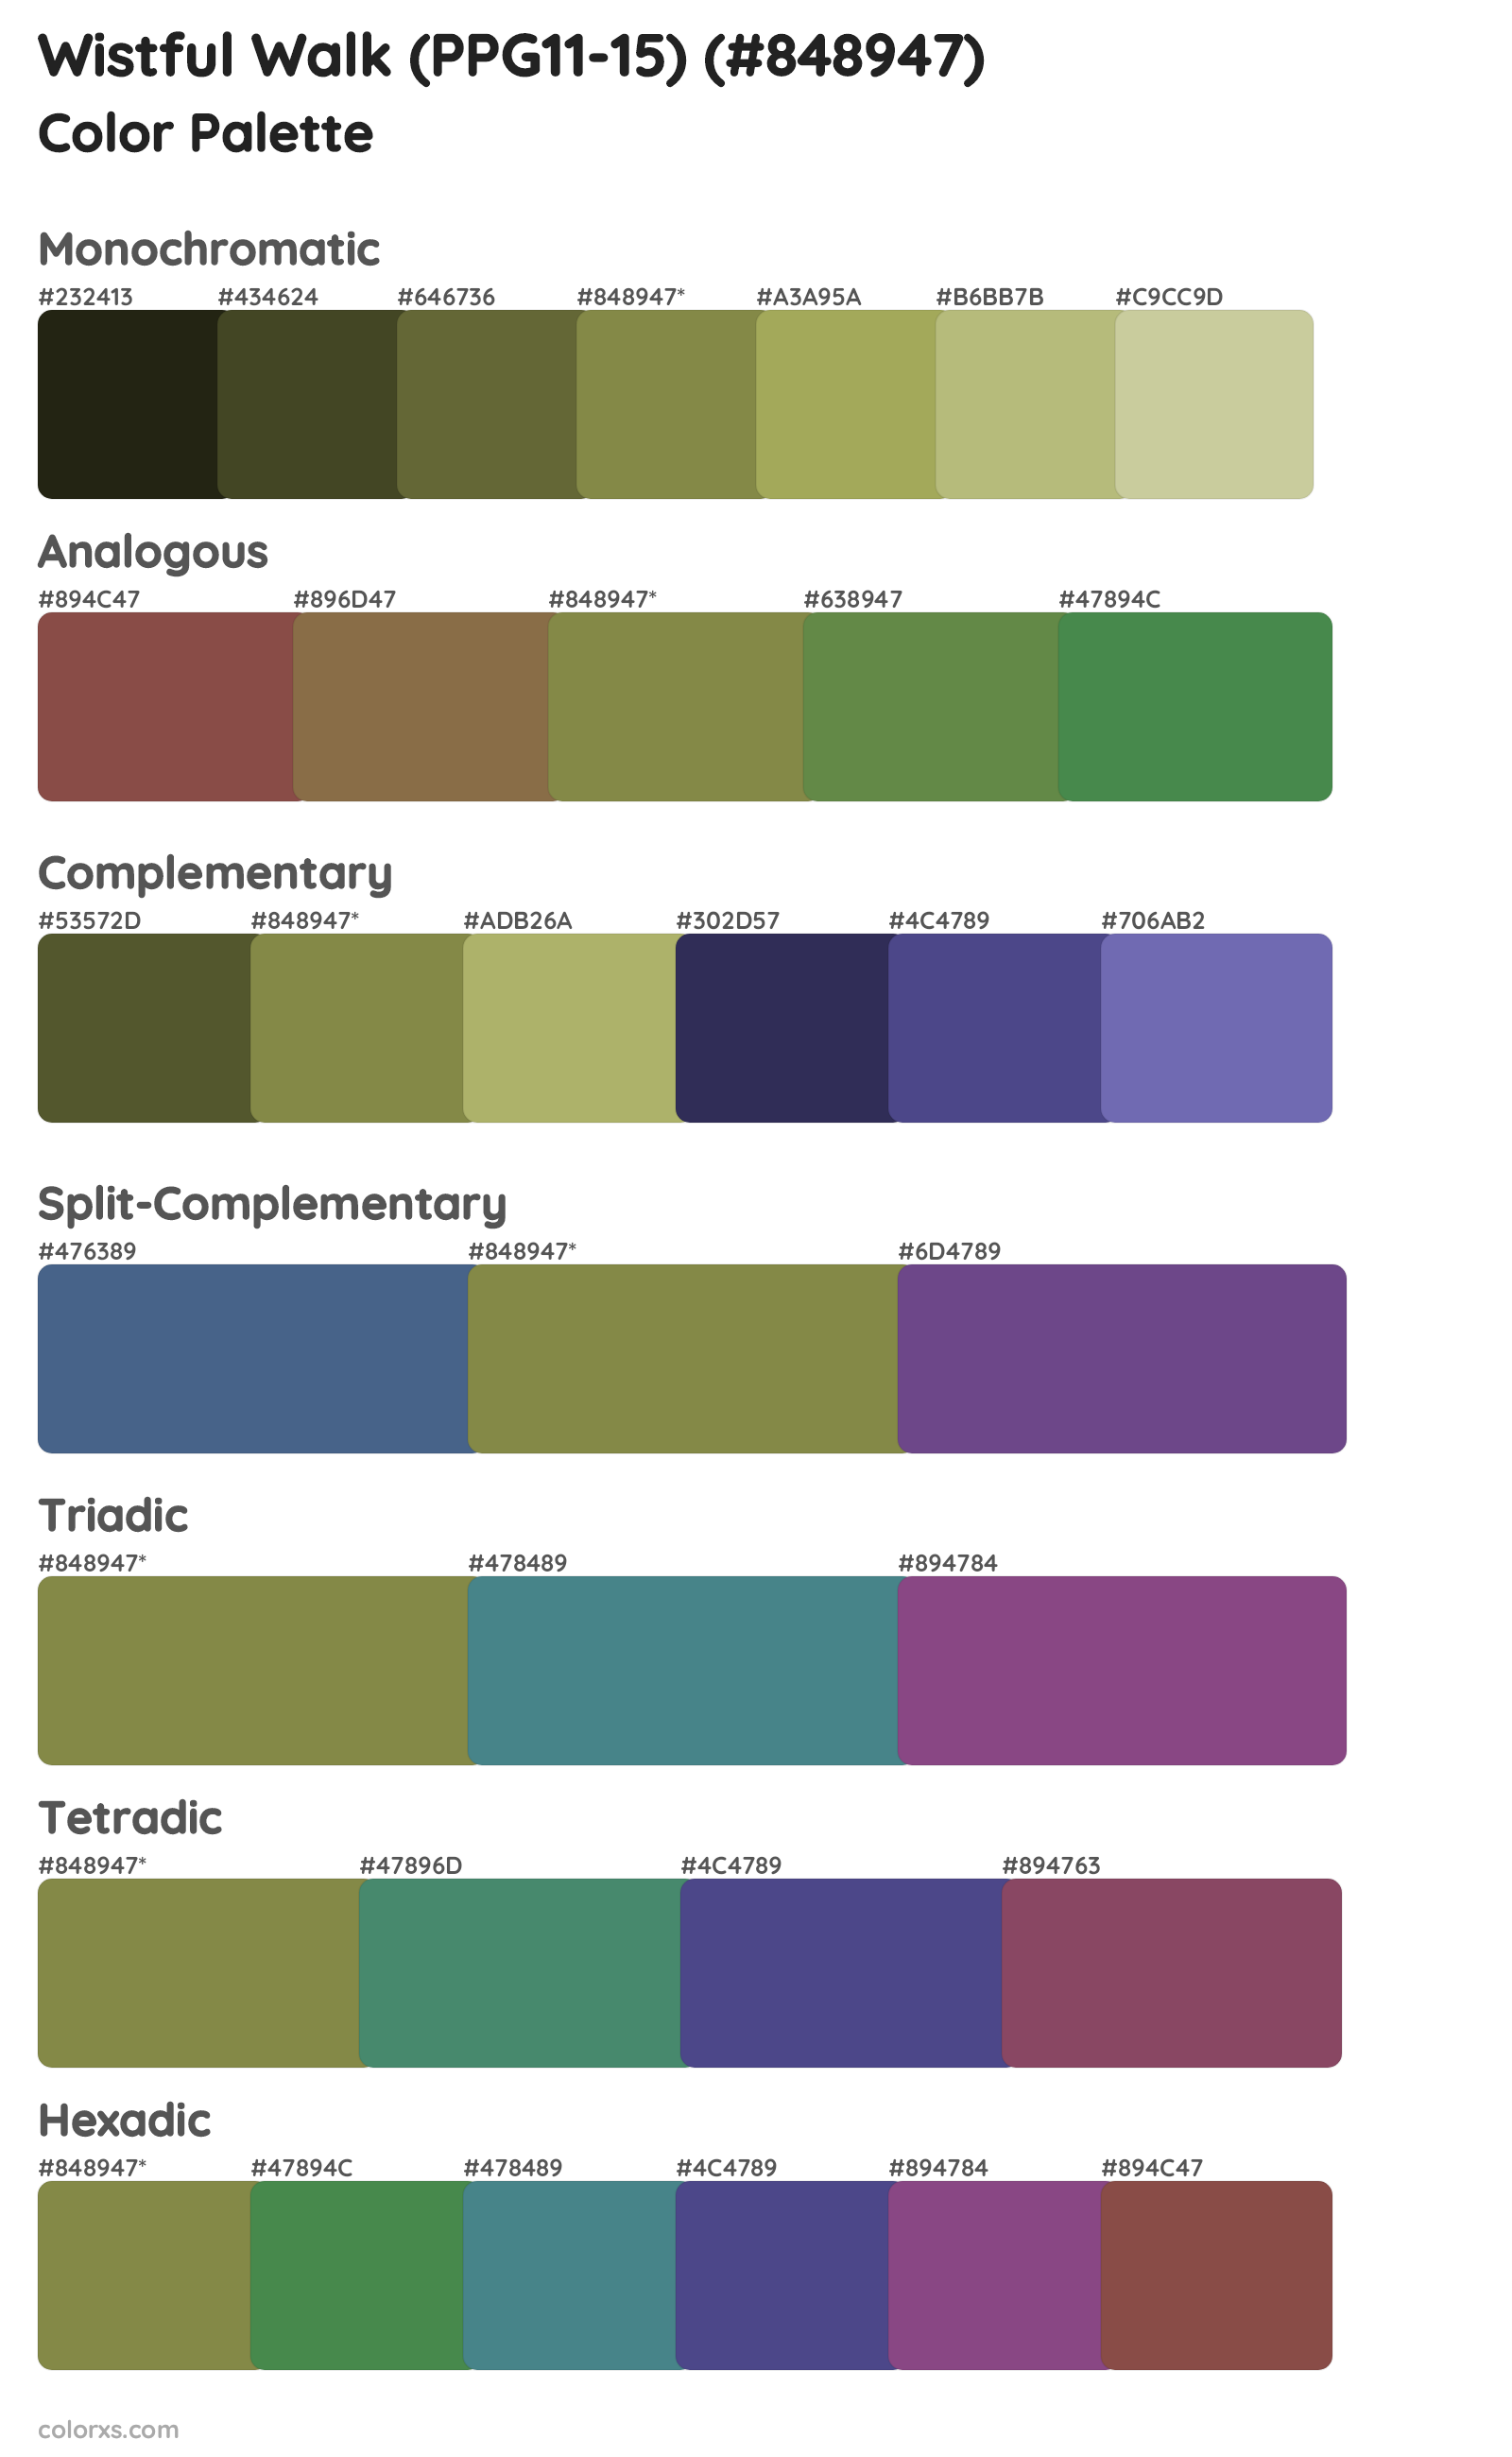 Wistful Walk (PPG11-15) Color Scheme Palettes